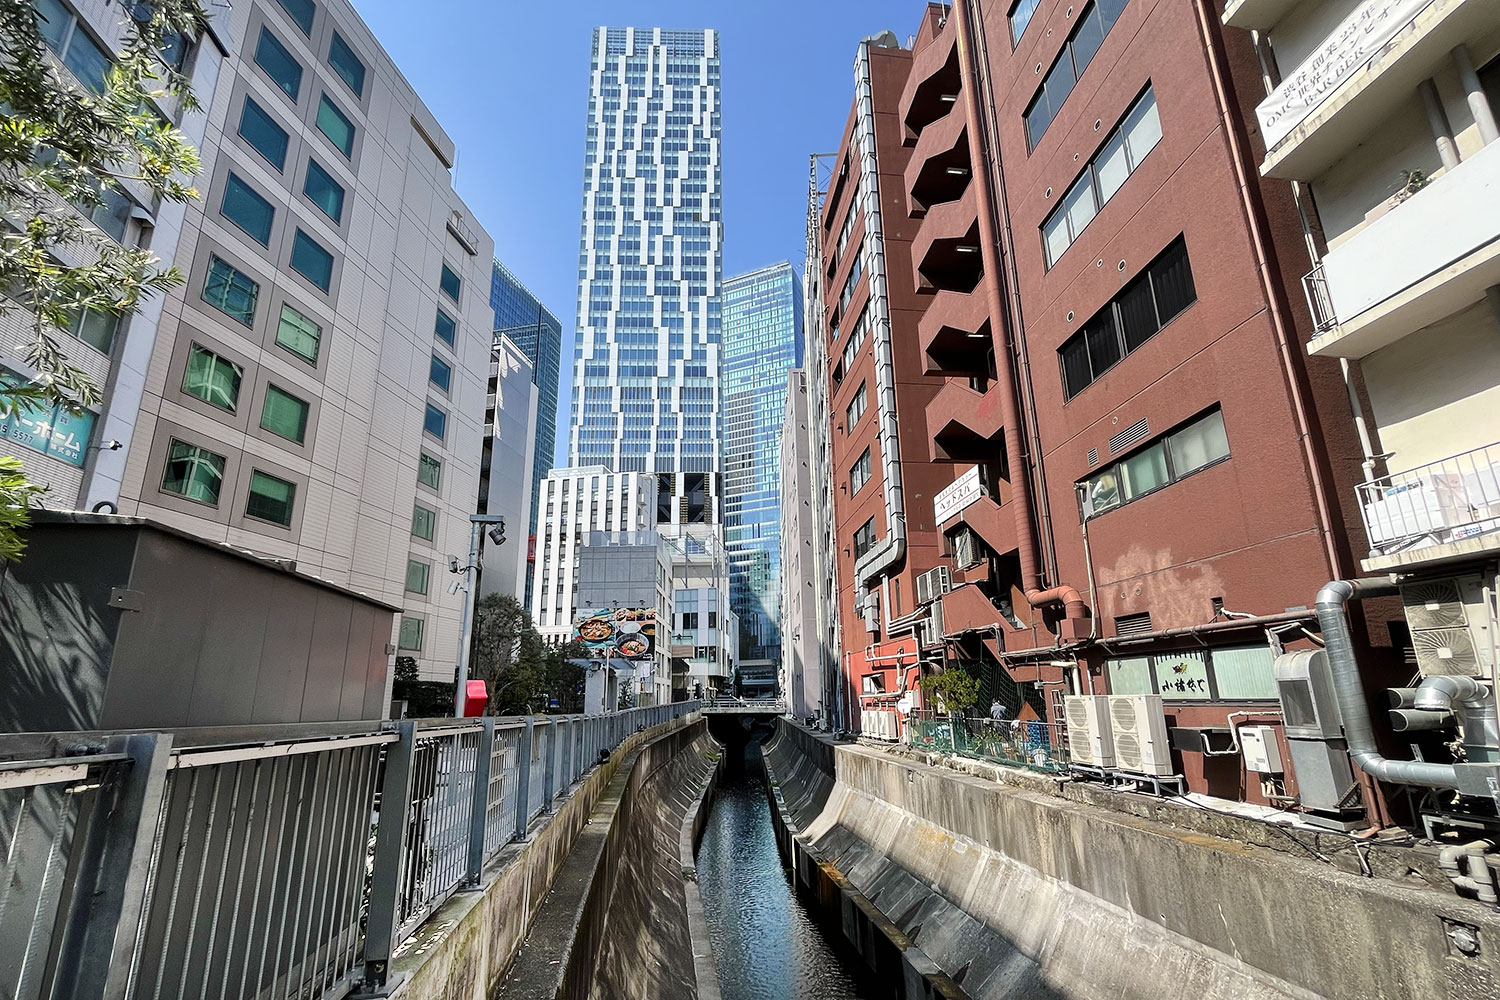 橋を下流から見るとこんな感じ。奥に見えるビルが「渋谷スクランブルスクエア」。